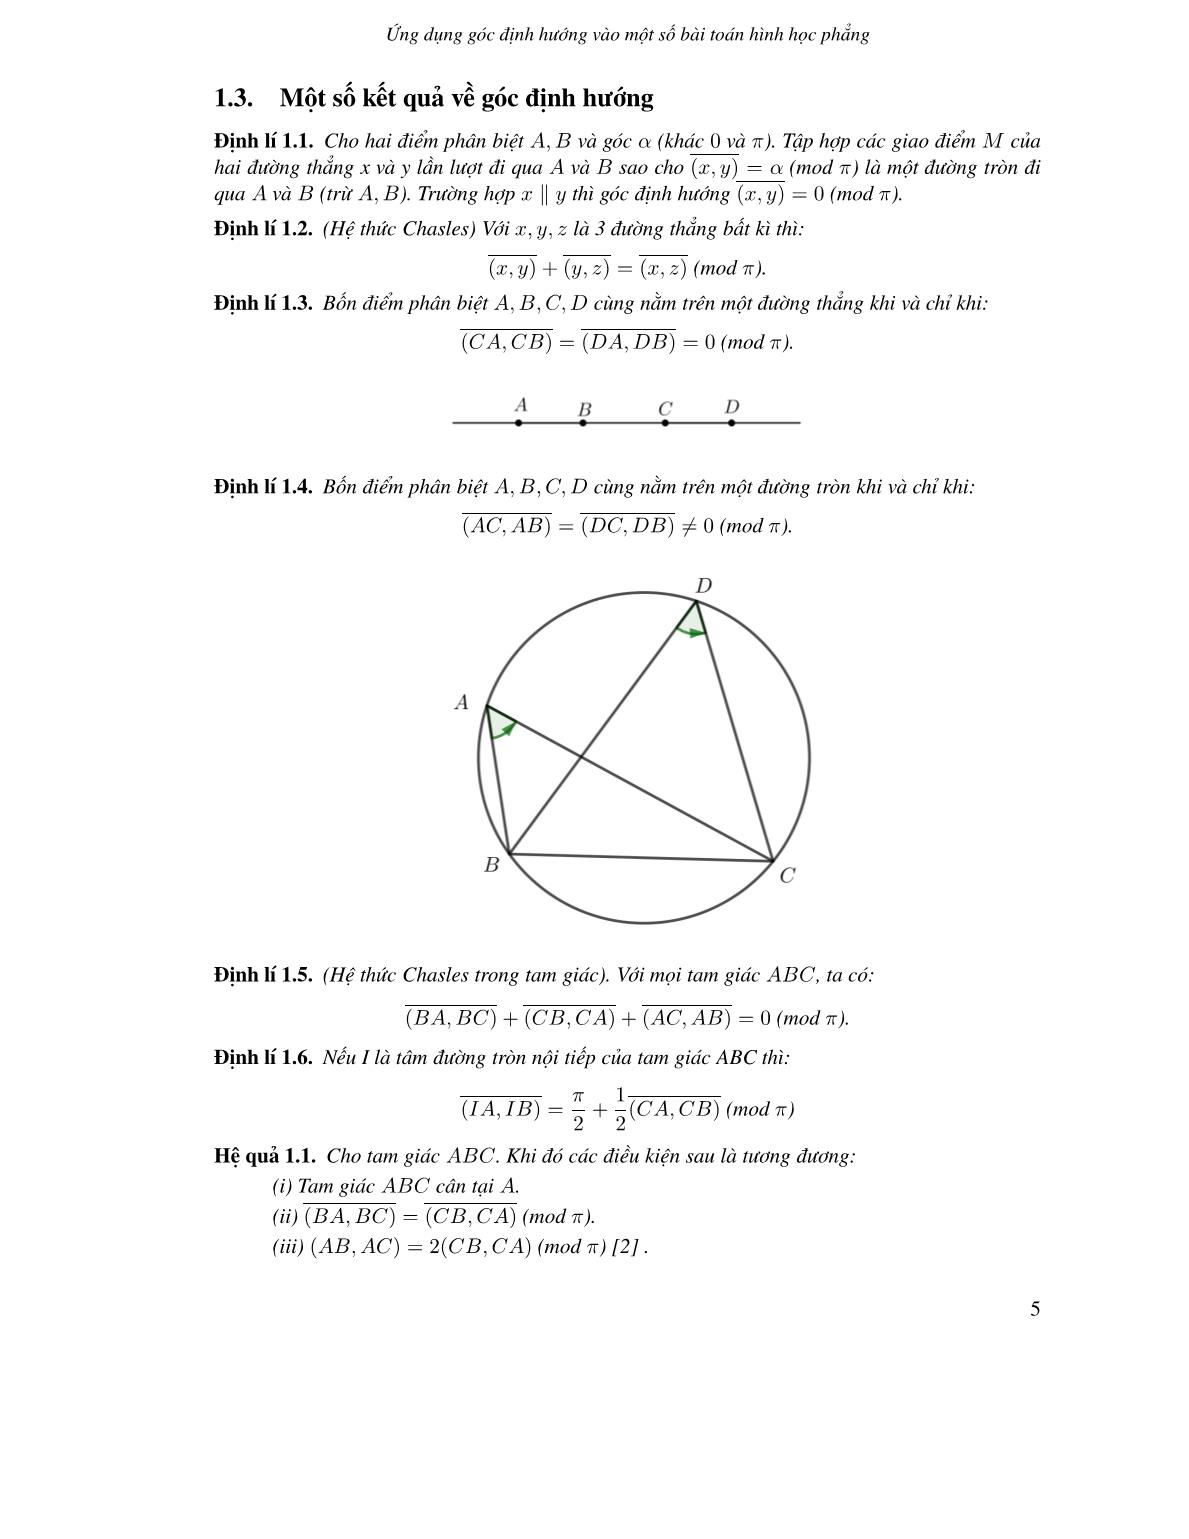 Ứng dụng góc định hướng vào một số bài toán hình học phẳng trang 3